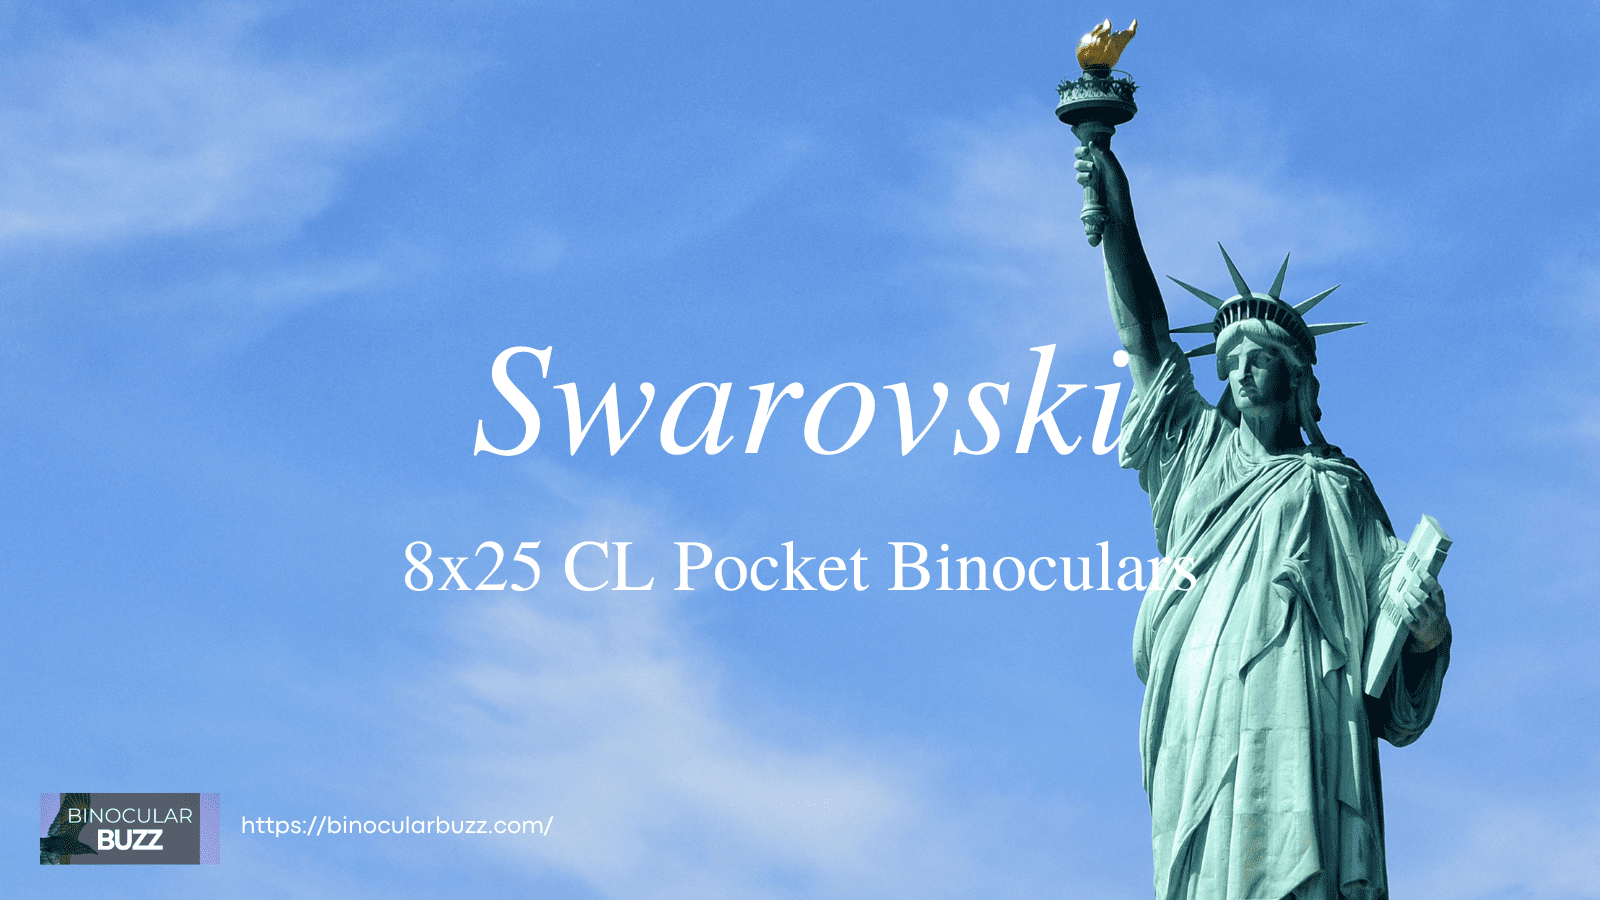 Swarovski 8x25 CL Pocket Binoculars Review